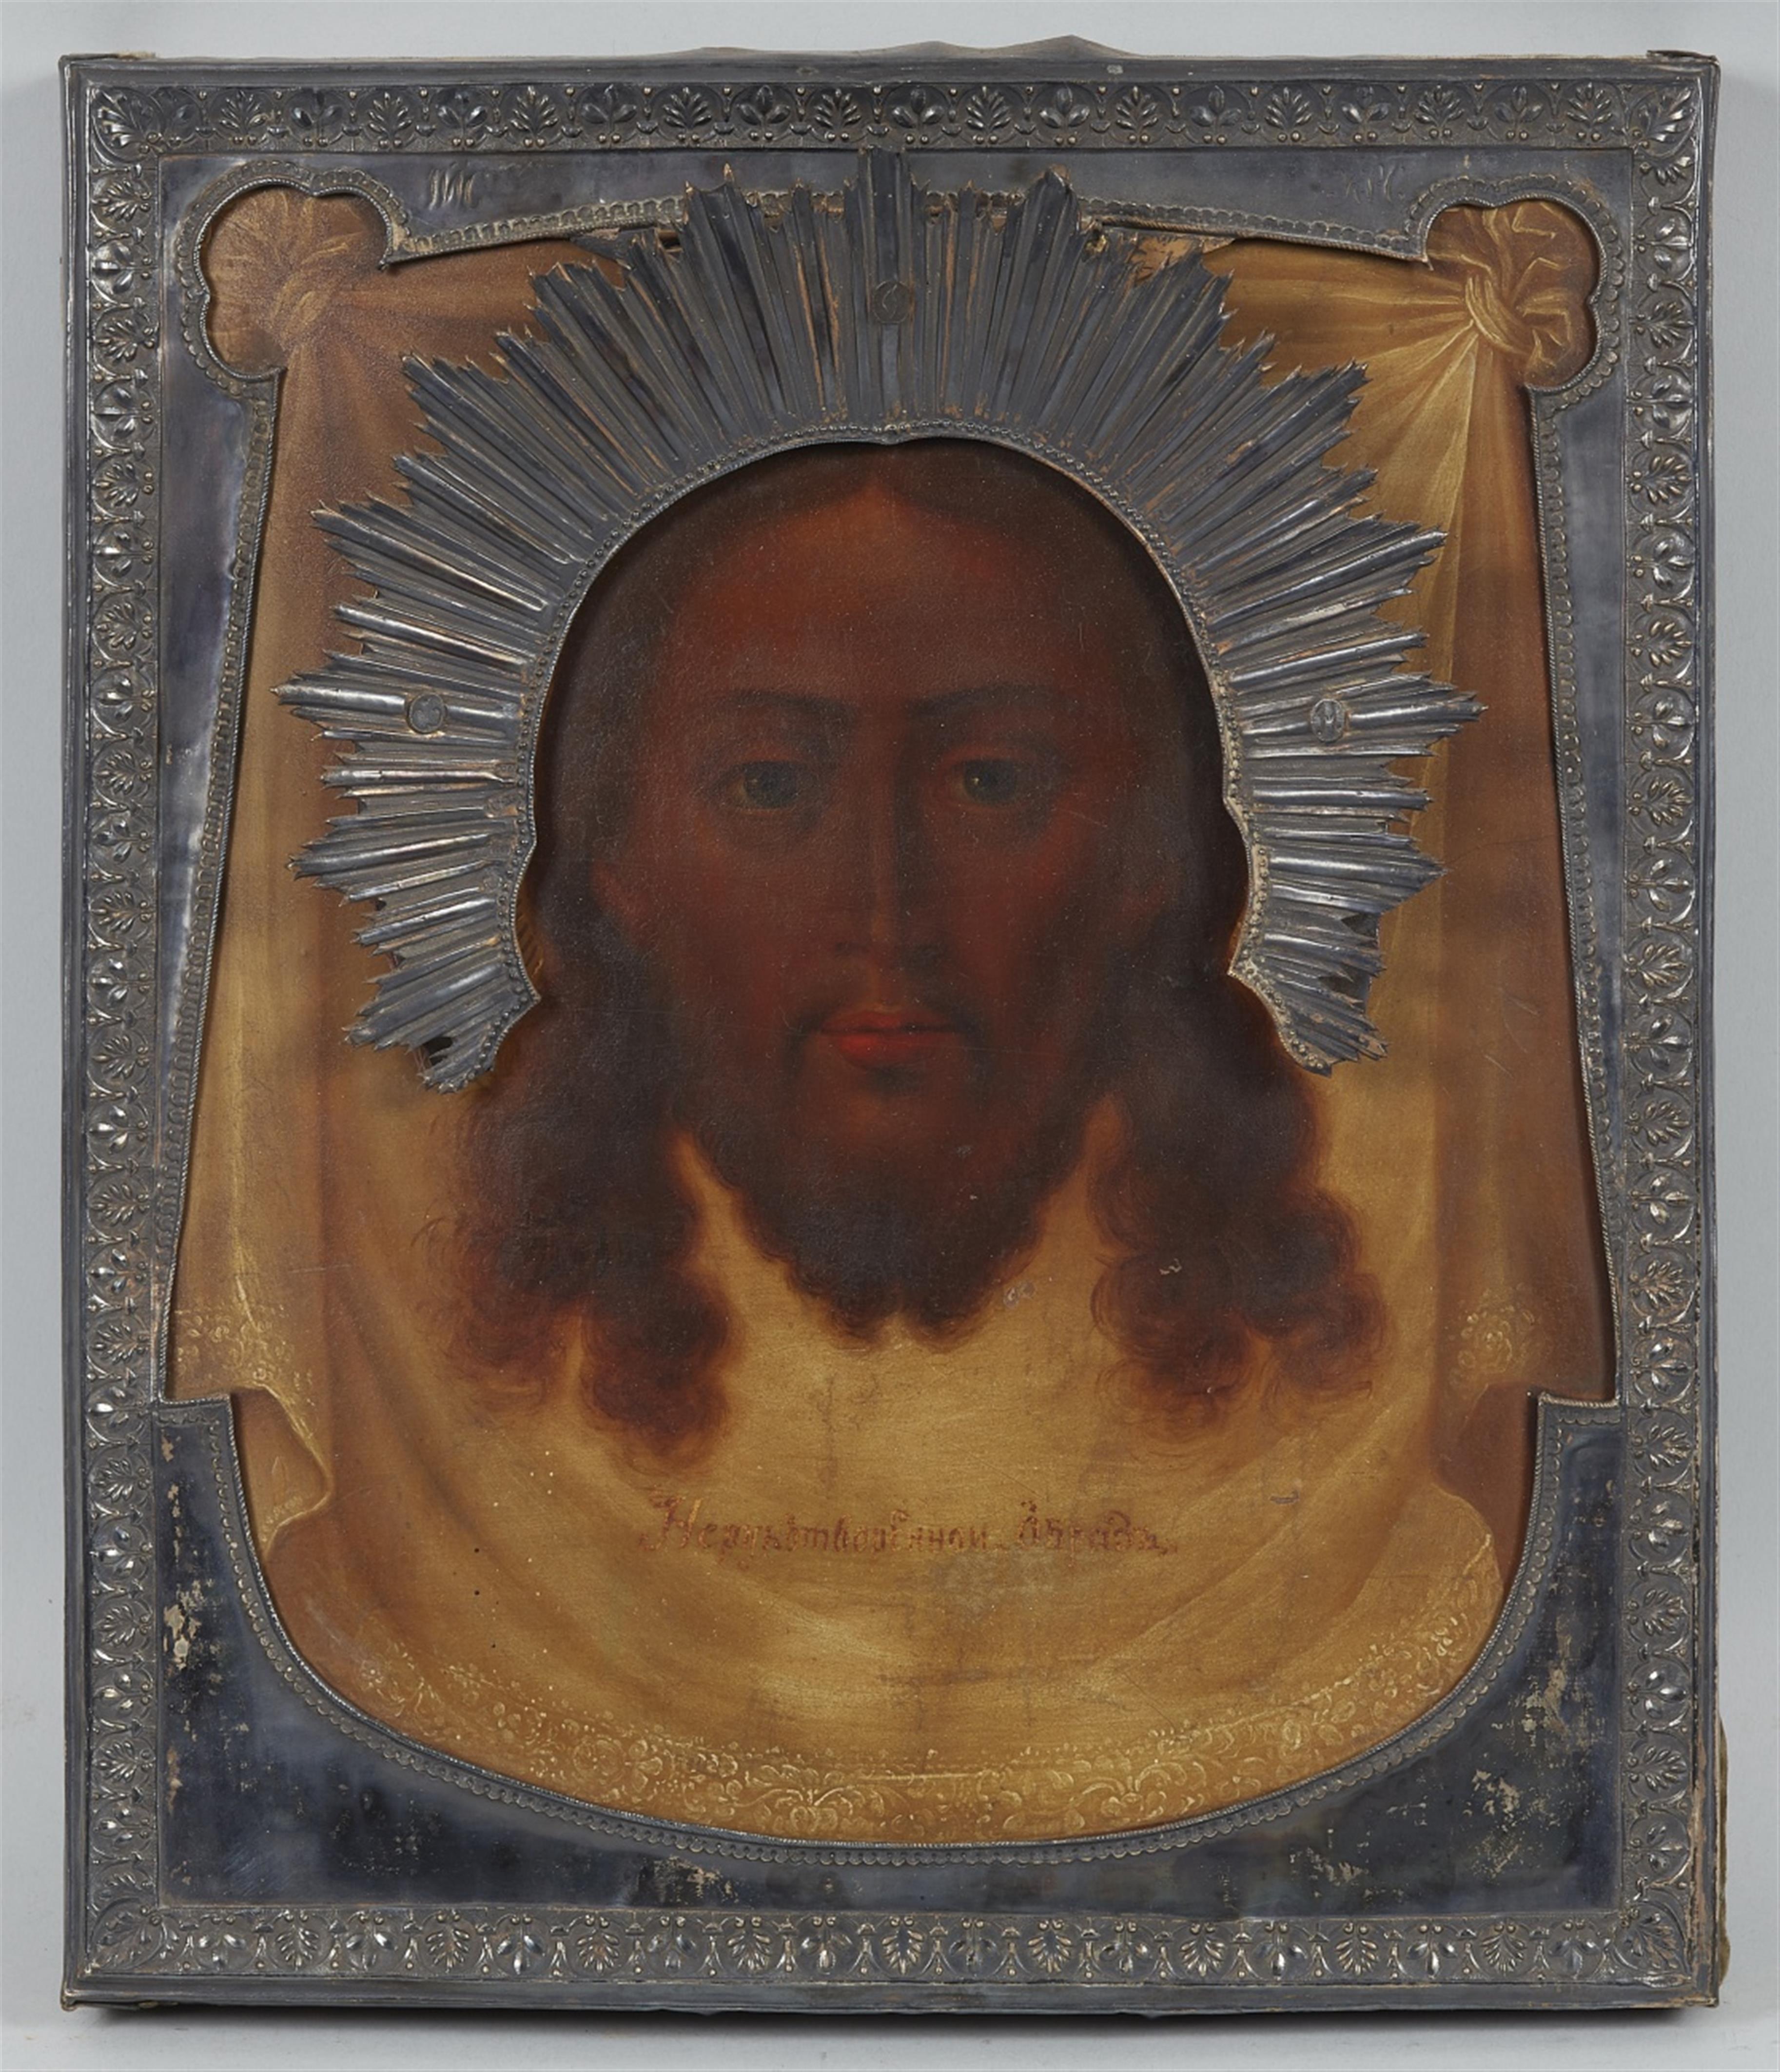 Russia 19. Jahrhundert - Ikone mit dem Mandylion, dem nicht von Menschenhand gemalten Antlitz Christi - image-1